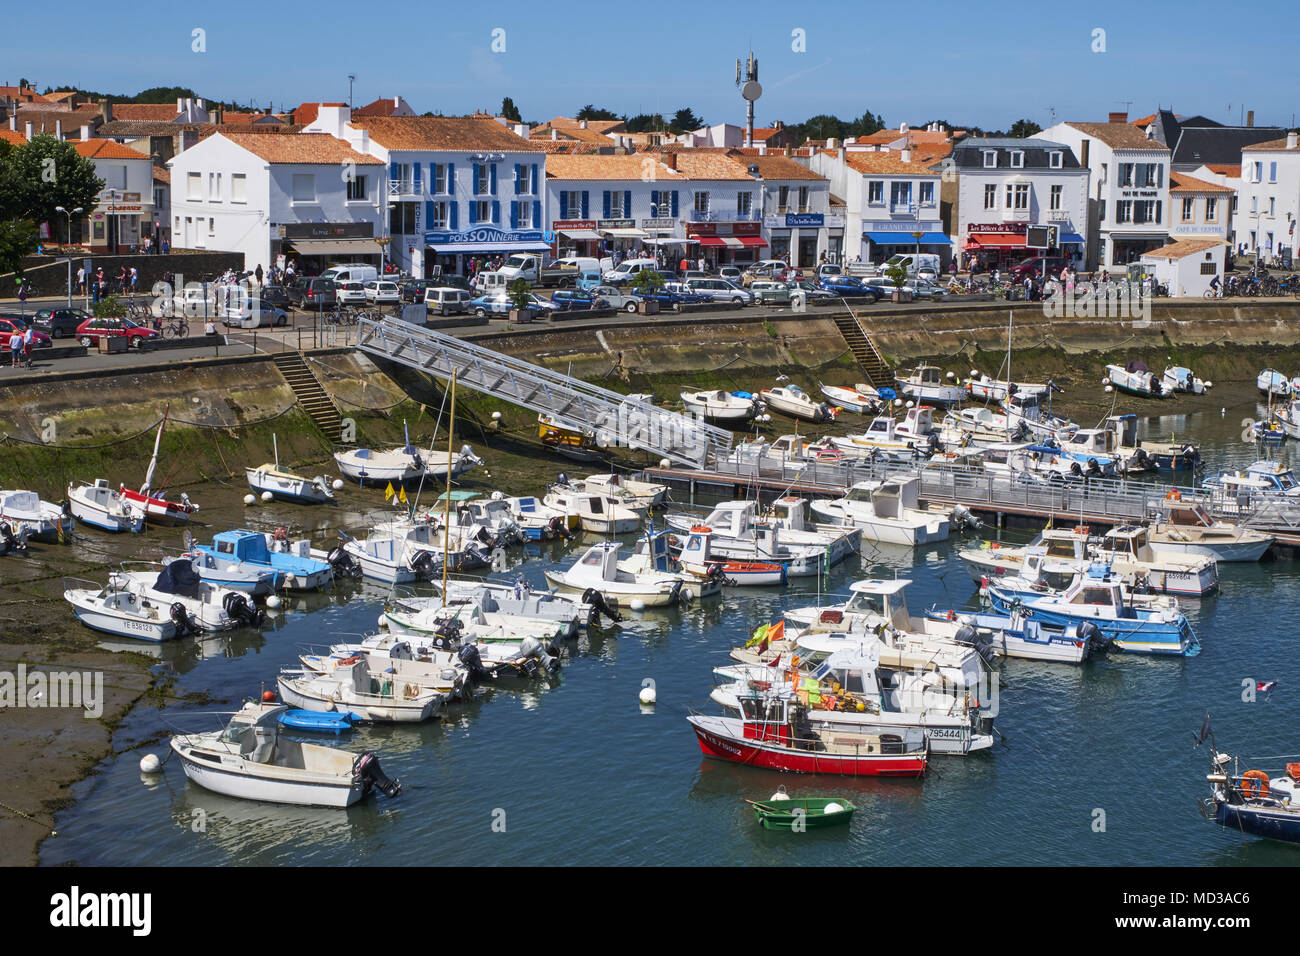 France, Vendée, Yeu island, Port-Joinville Stock Photo - Alamy